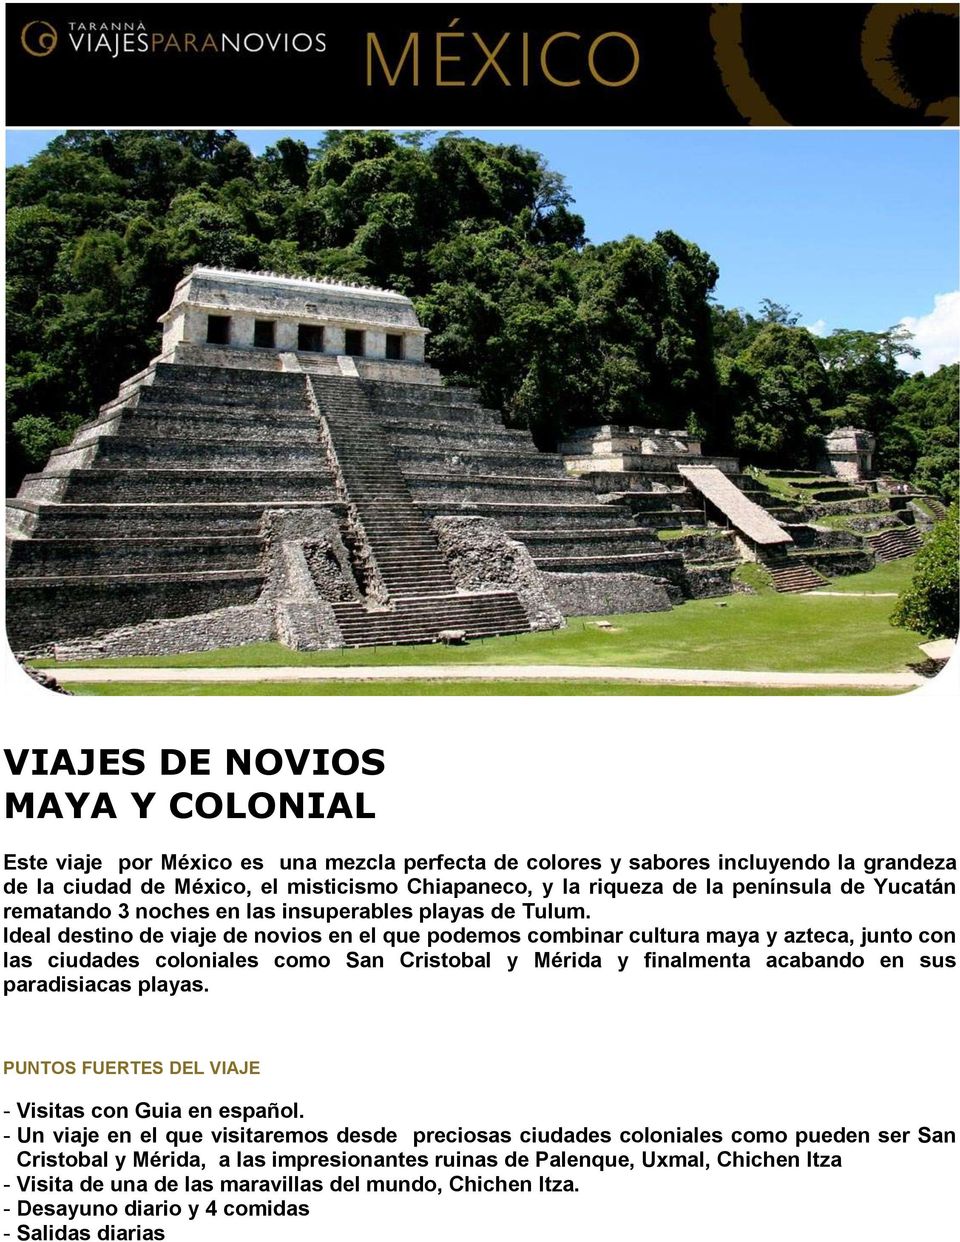 Ideal destino de viaje de novios en el que podemos combinar cultura maya y azteca, junto con las ciudades coloniales como San Cristobal y Mérida y finalmenta acabando en sus paradisiacas playas.